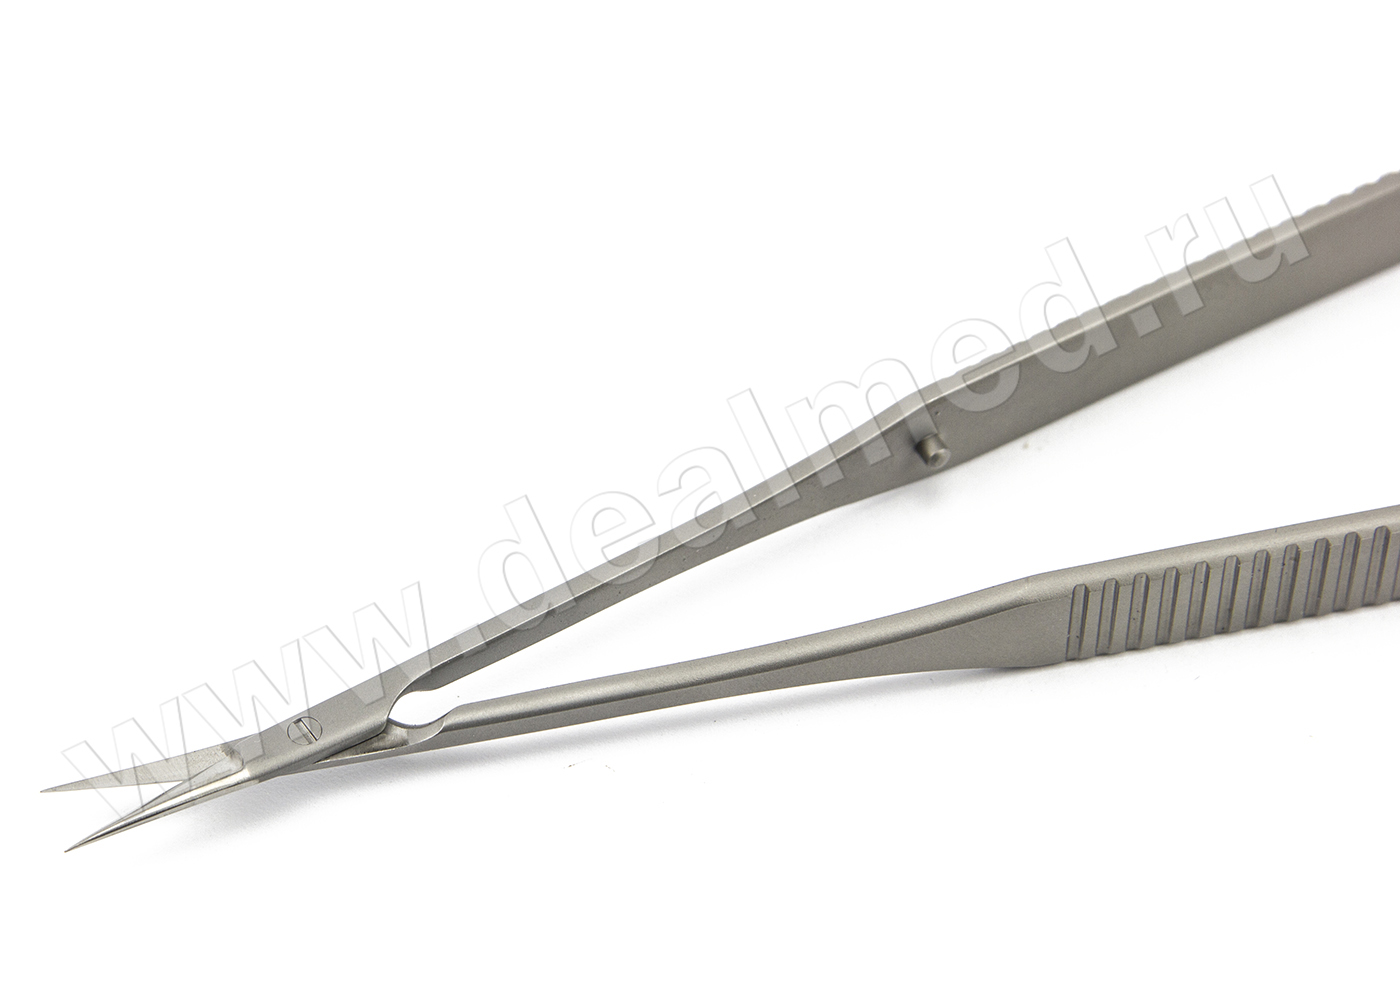 Ножницы микрохирургические 160 мм, плоская ручка остроконечные лезвия длина 13 мм, прямые MS-1004 ПТО Медтехника, Россия